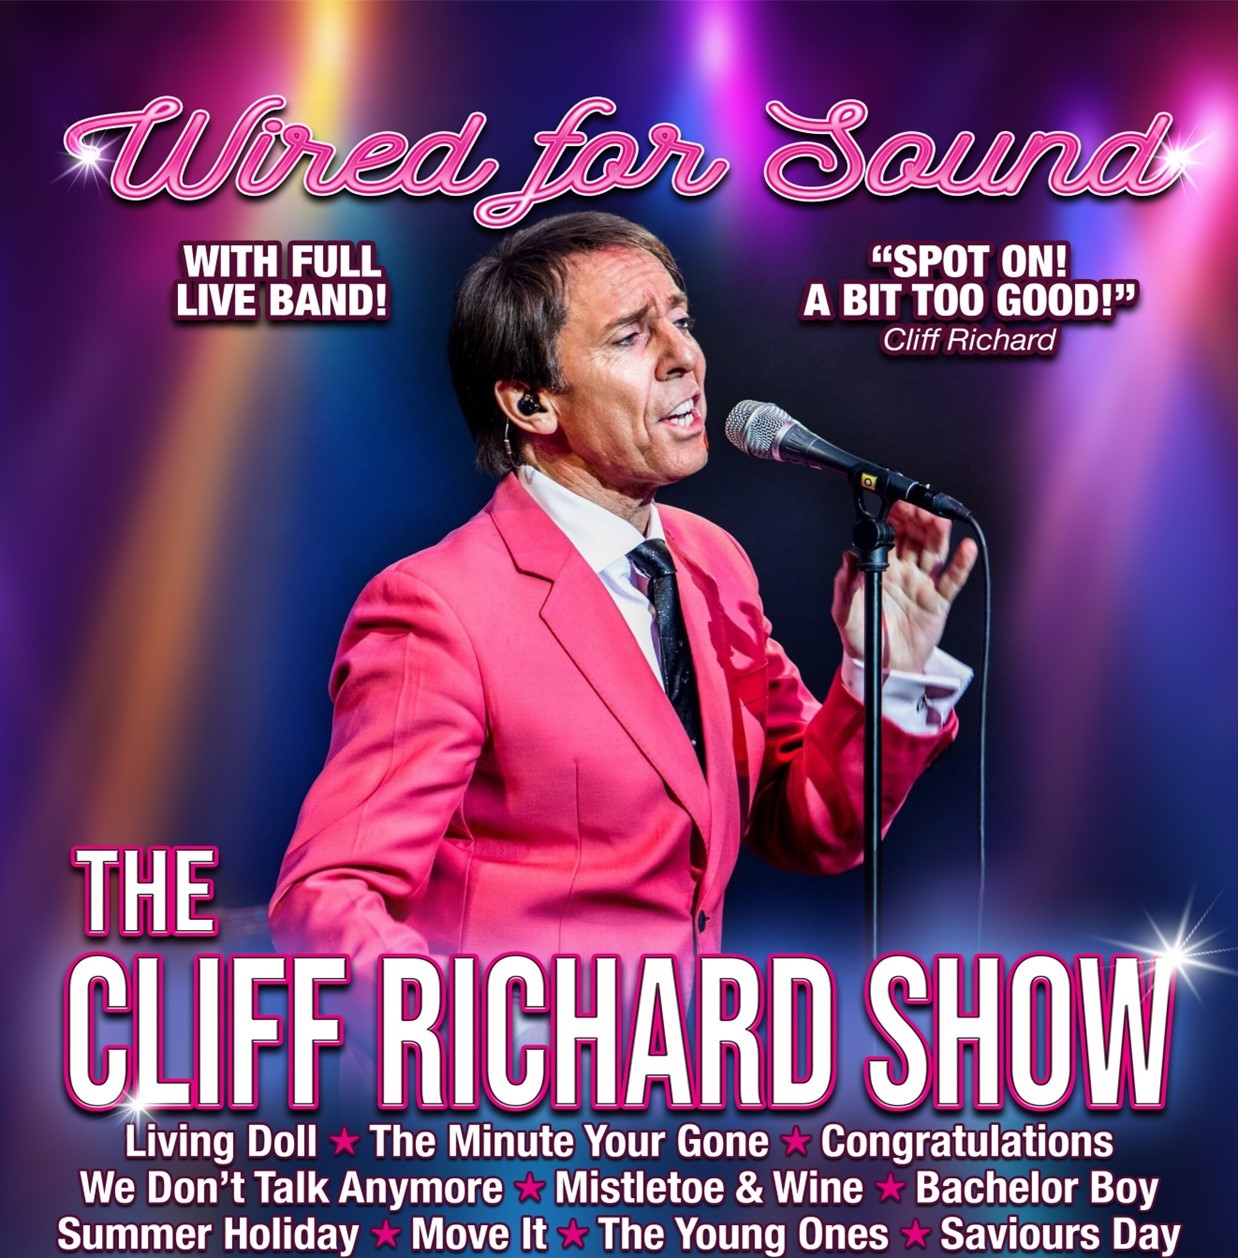 Wired For Sound The Cliff Richard Tribute Show on nov. 08, 19:30@Standard capacity - Choisissez un siège,Achetez des billets et obtenez des informations surSutton Coldfield Town Hall 